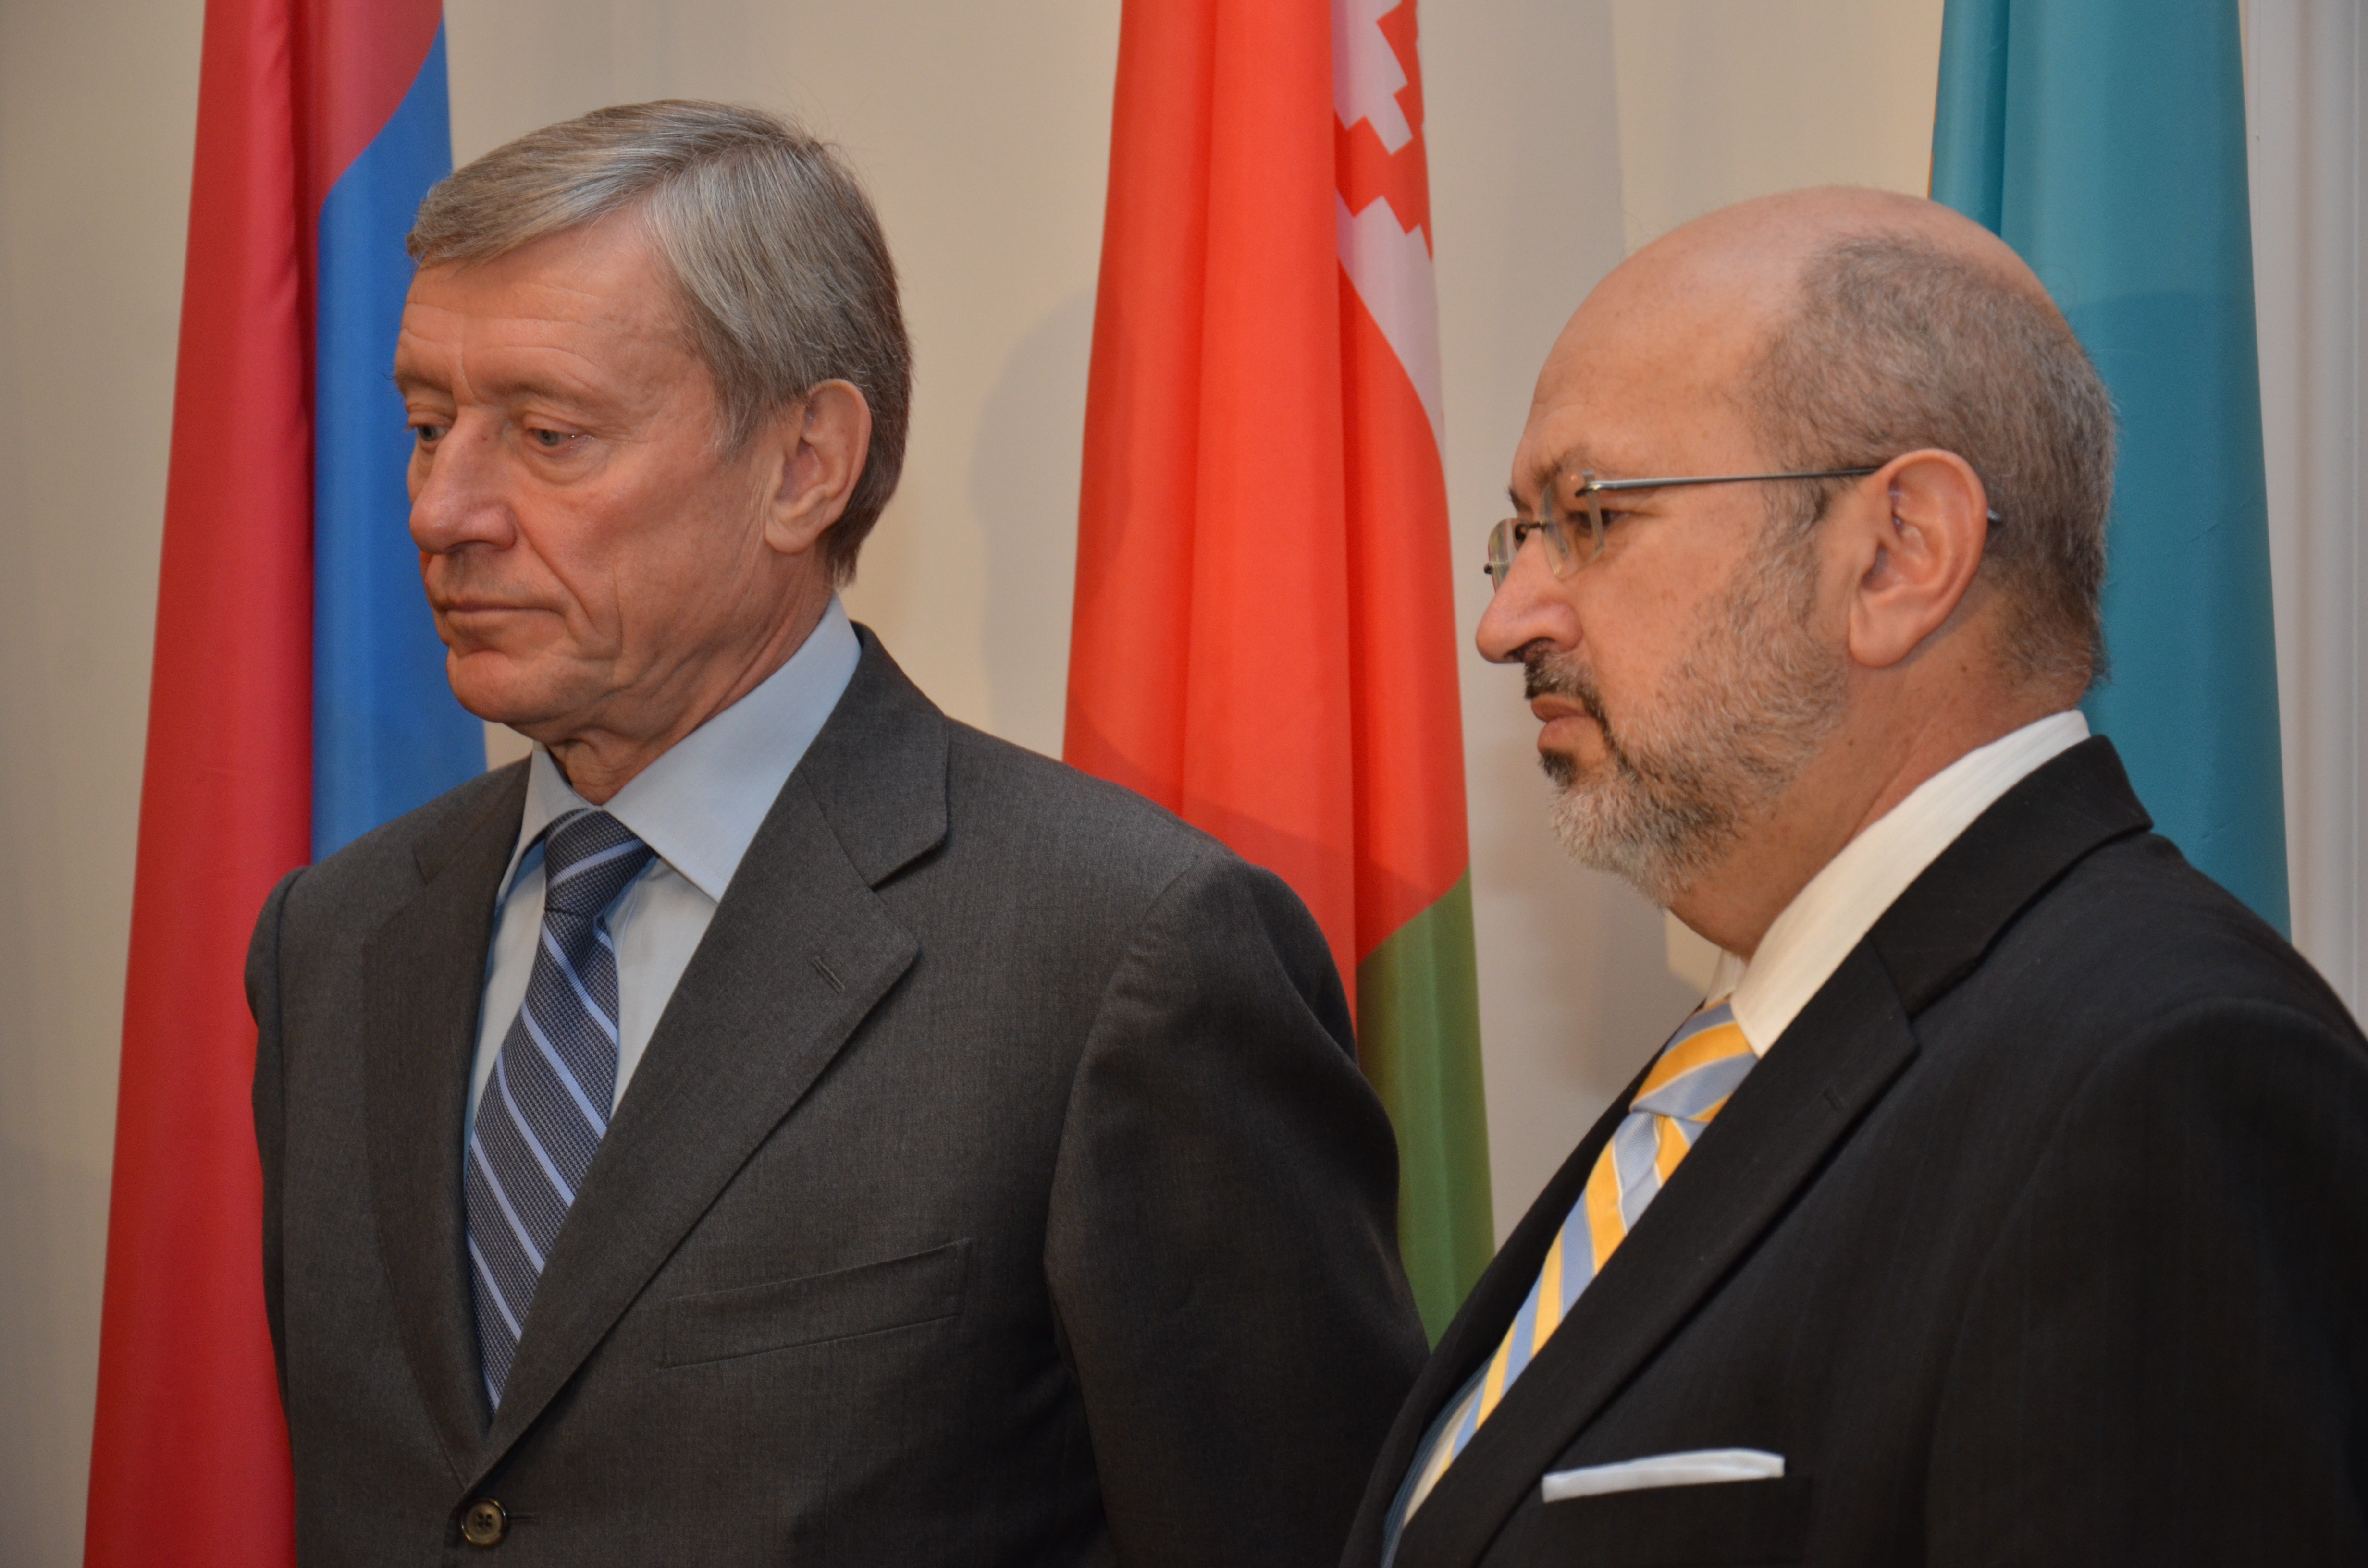 Генеральный секретарь ОБСЕ Ламберто Занньер  выступил на расширенном заседании Постоянного Совета при ОДКБ